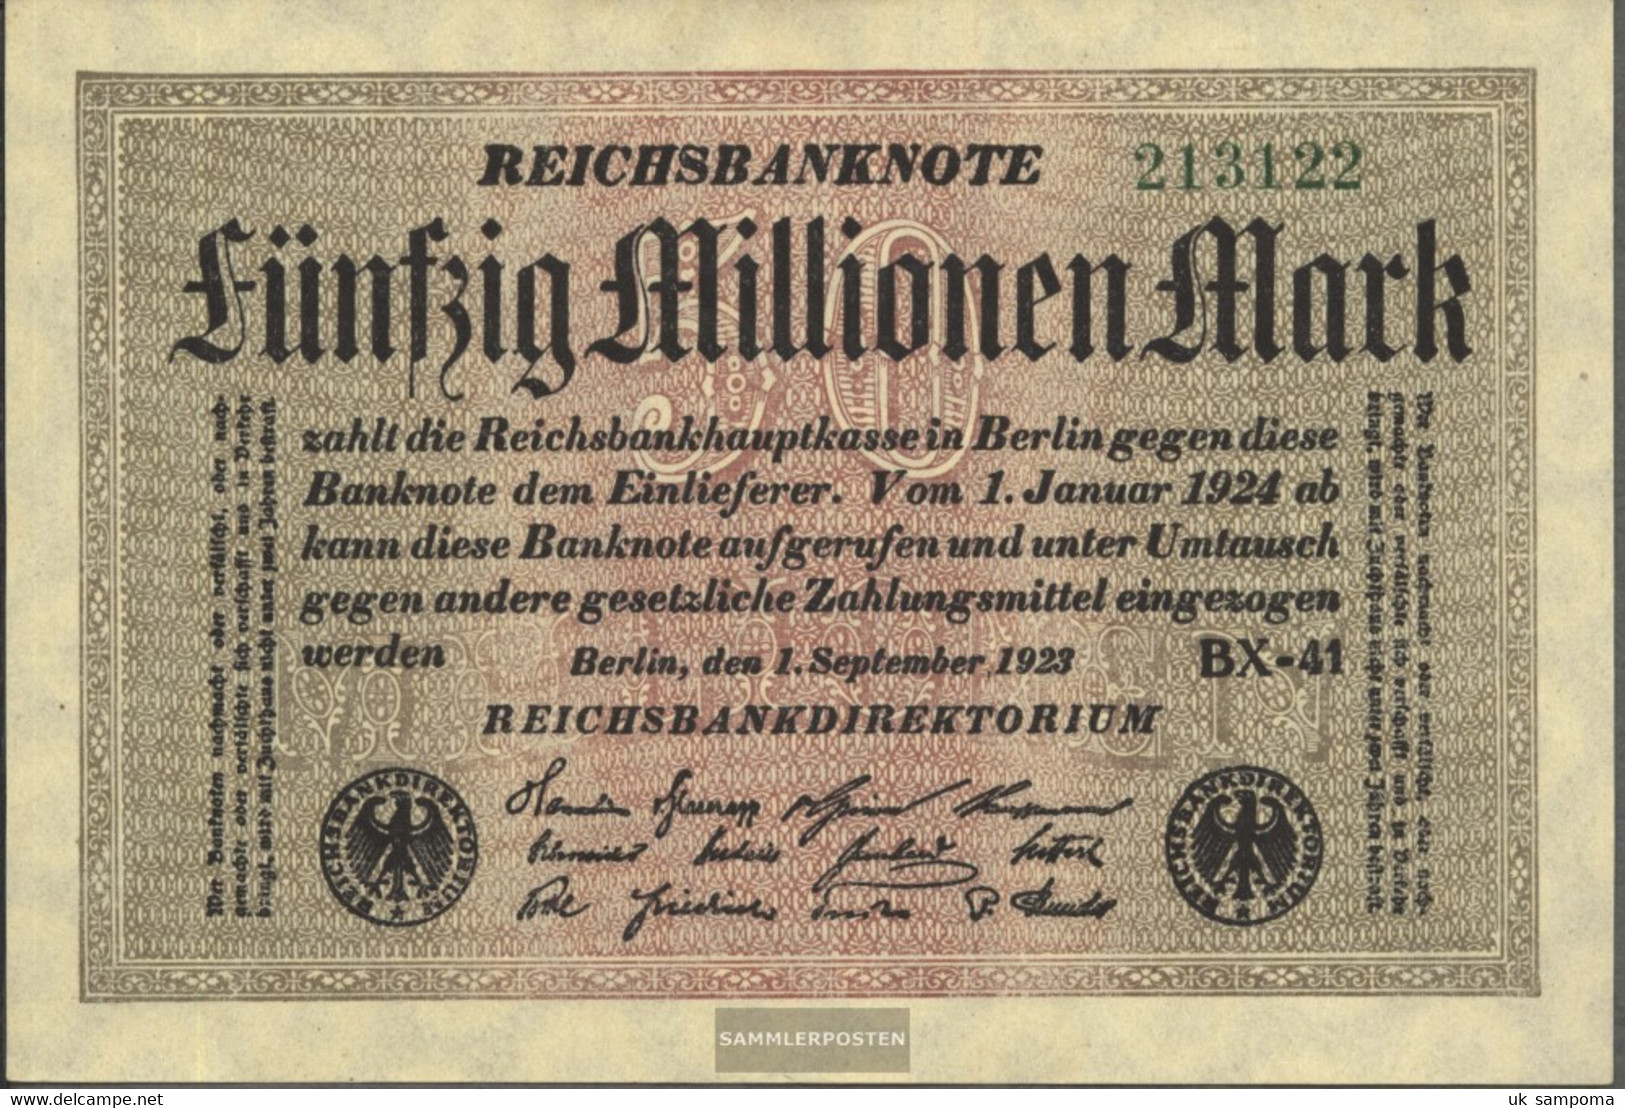 German Empire Rosenbg: 108h, Watermark Rings 6stellige Kontrollnummer Used (III) 1923 50 Million Mark - 50 Millionen Mark